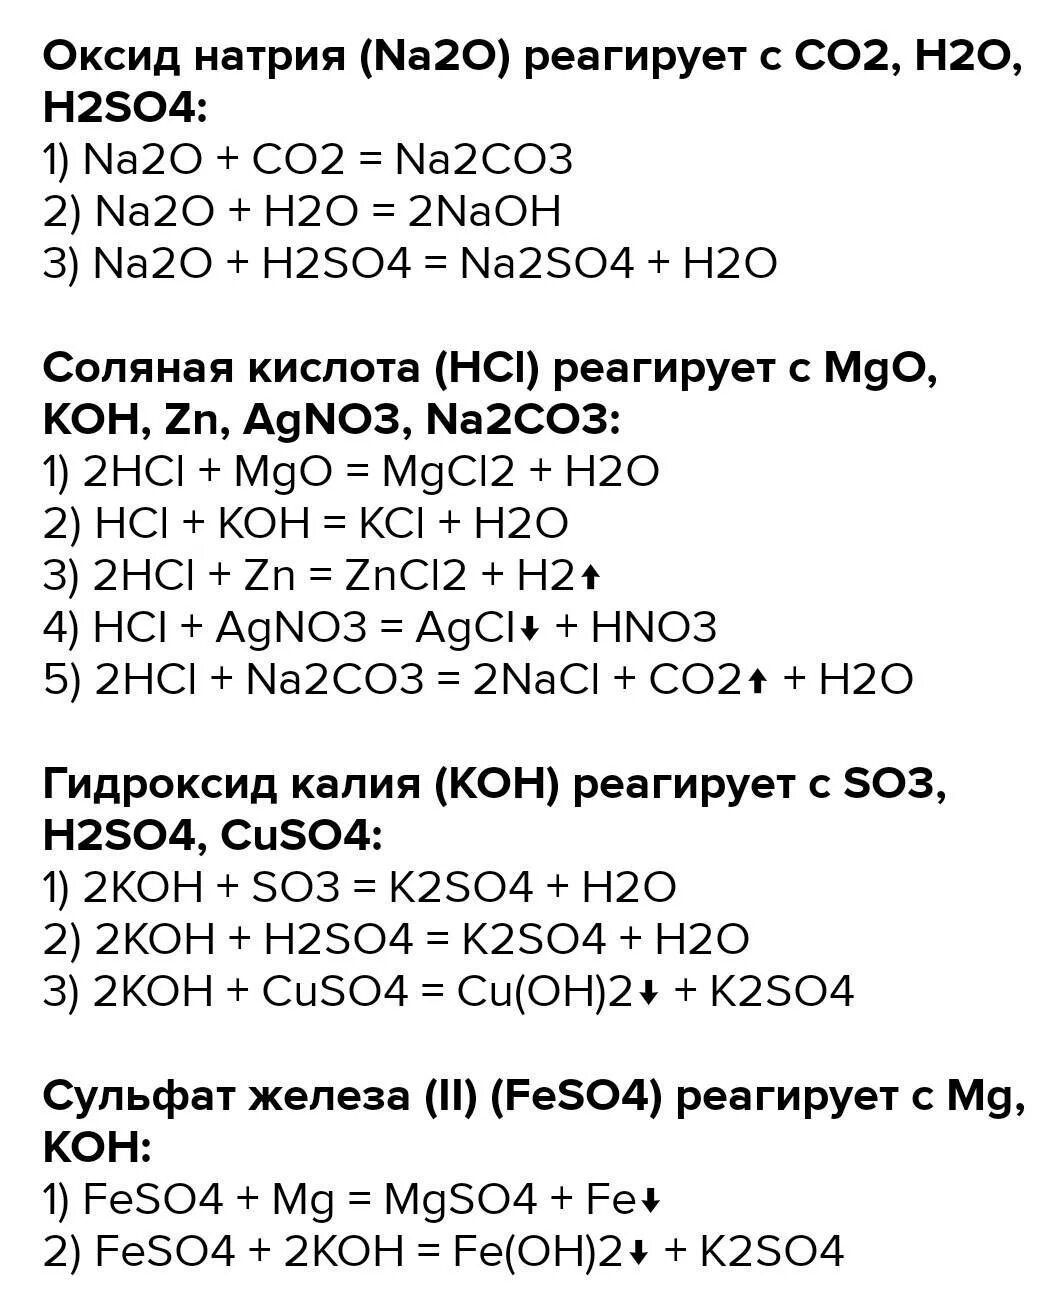 Реакция h2s+na. K+h2so4 уравнение химической реакции. Na2co3 реакция. Koh уравнение реакции. S koh уравнение